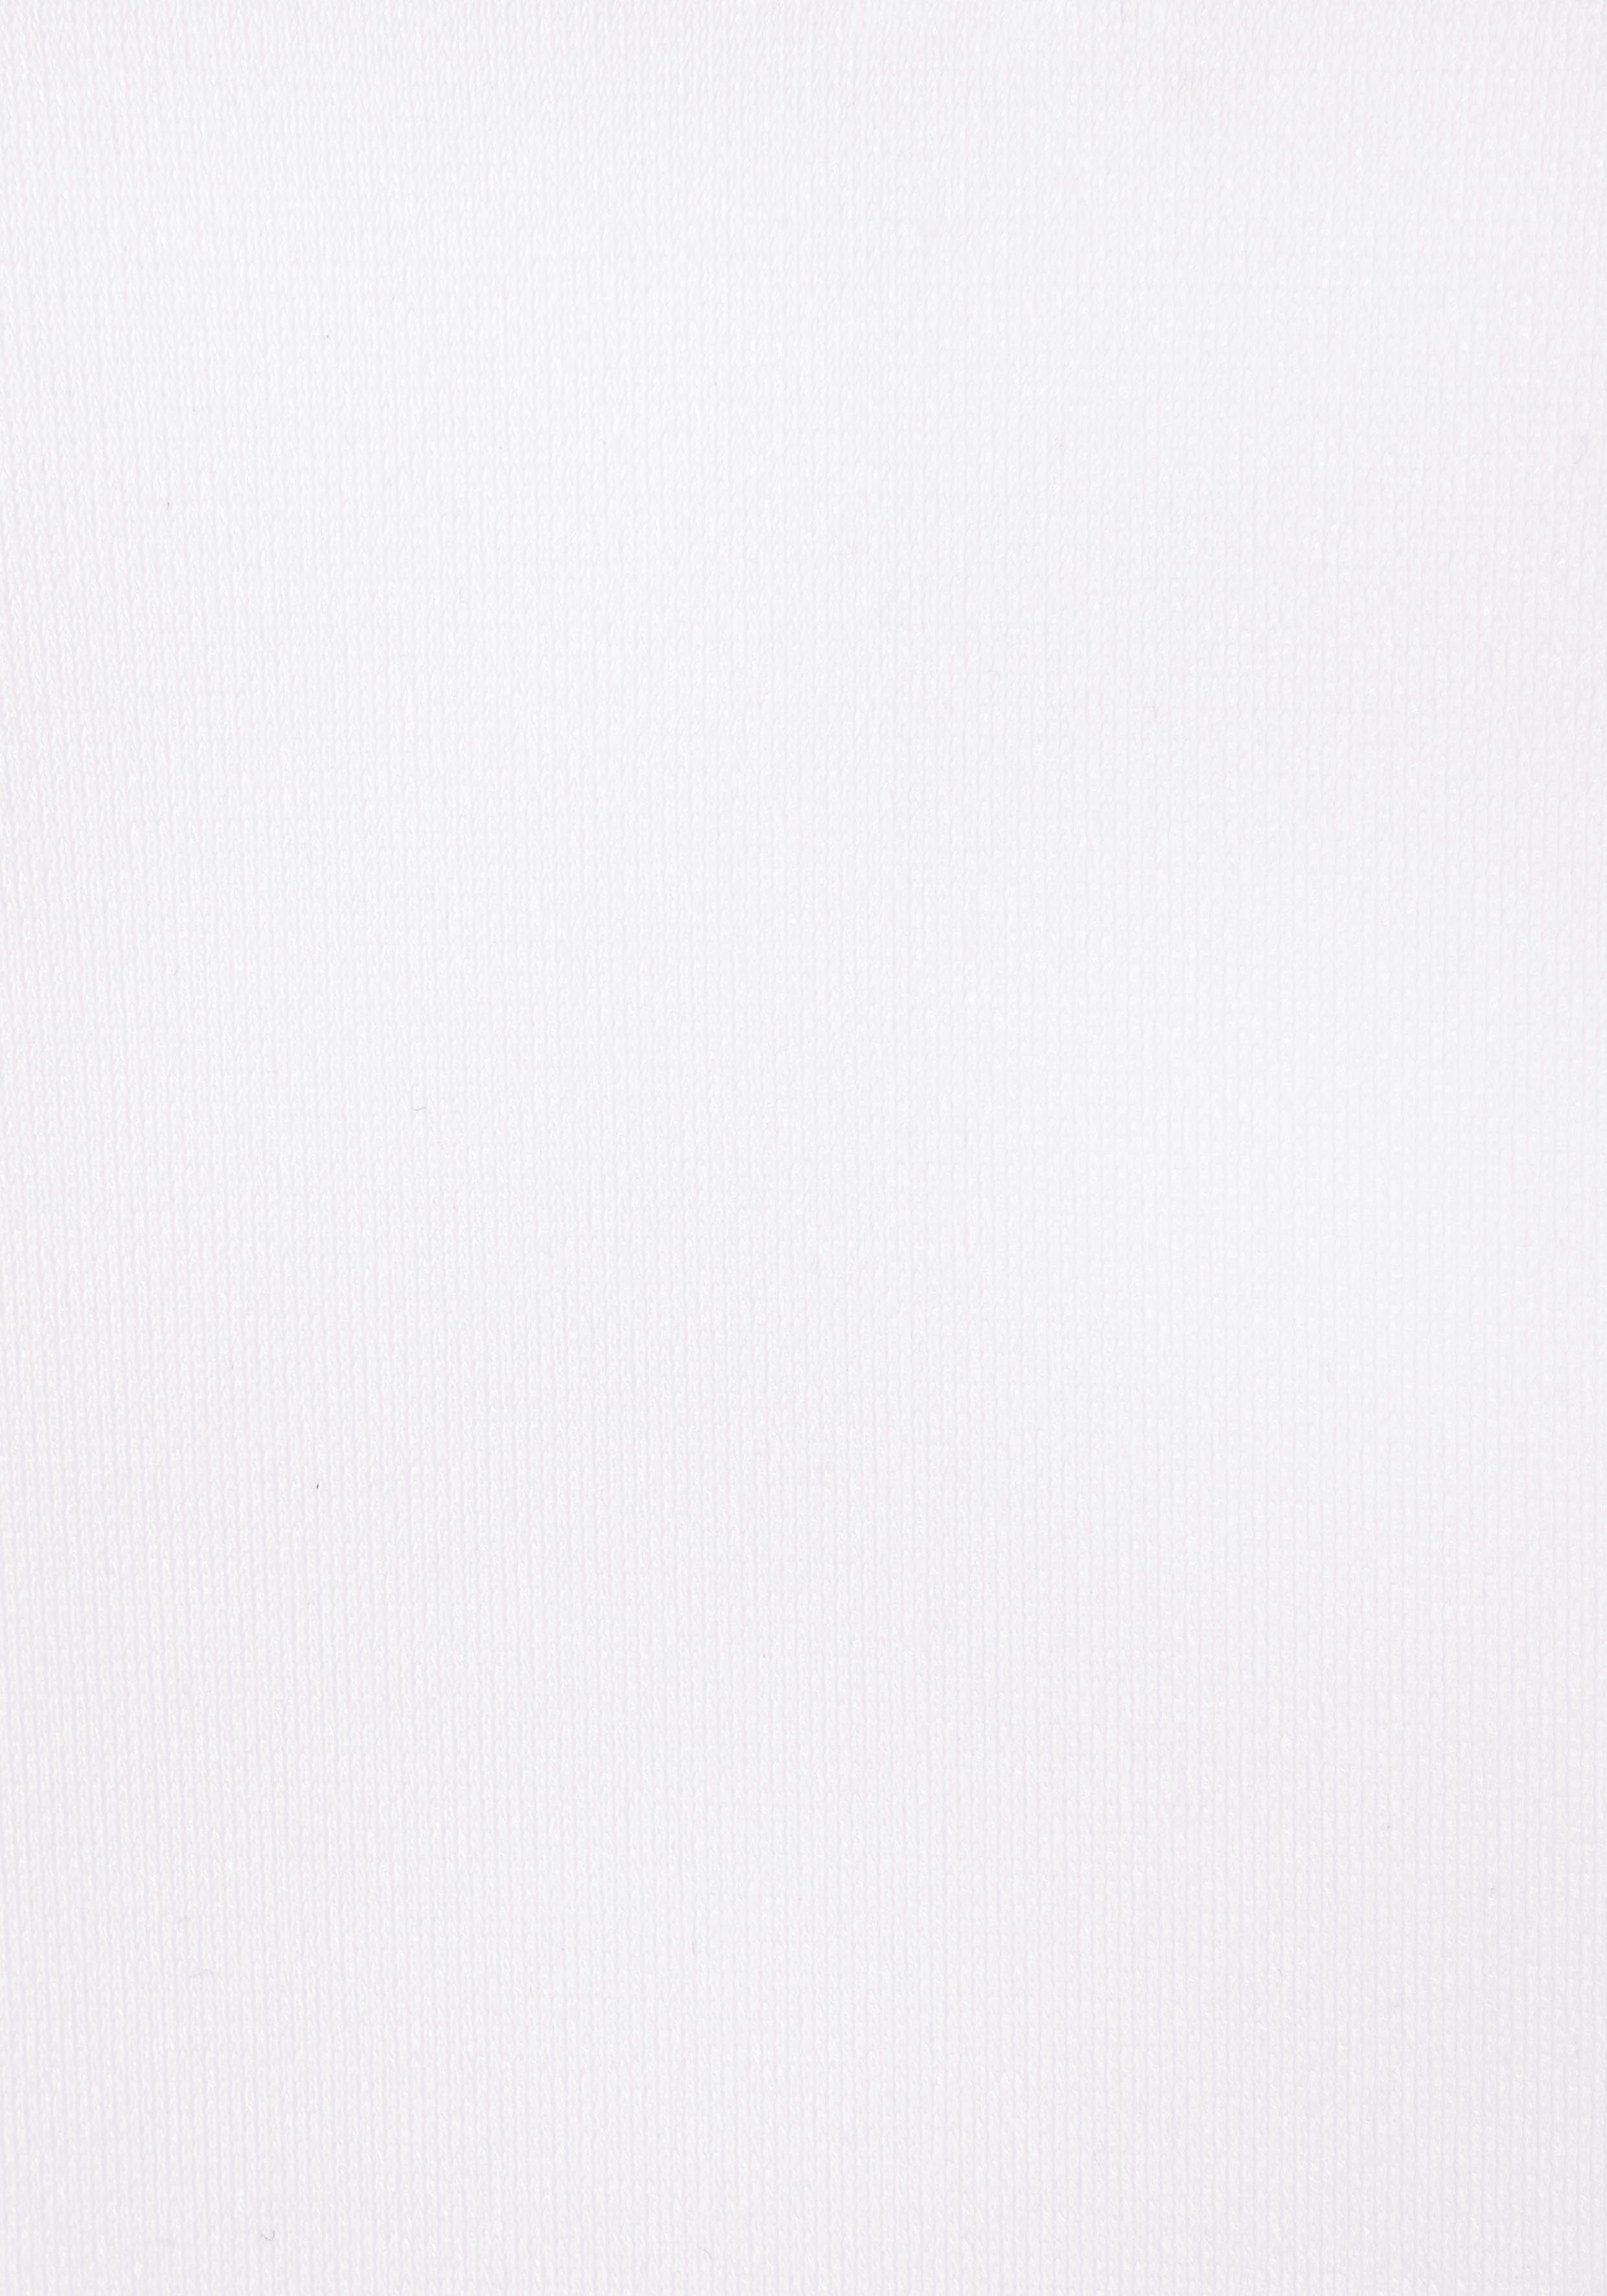 Nuance Schalen-BH-Hemd mit Schalen integrierten weiß